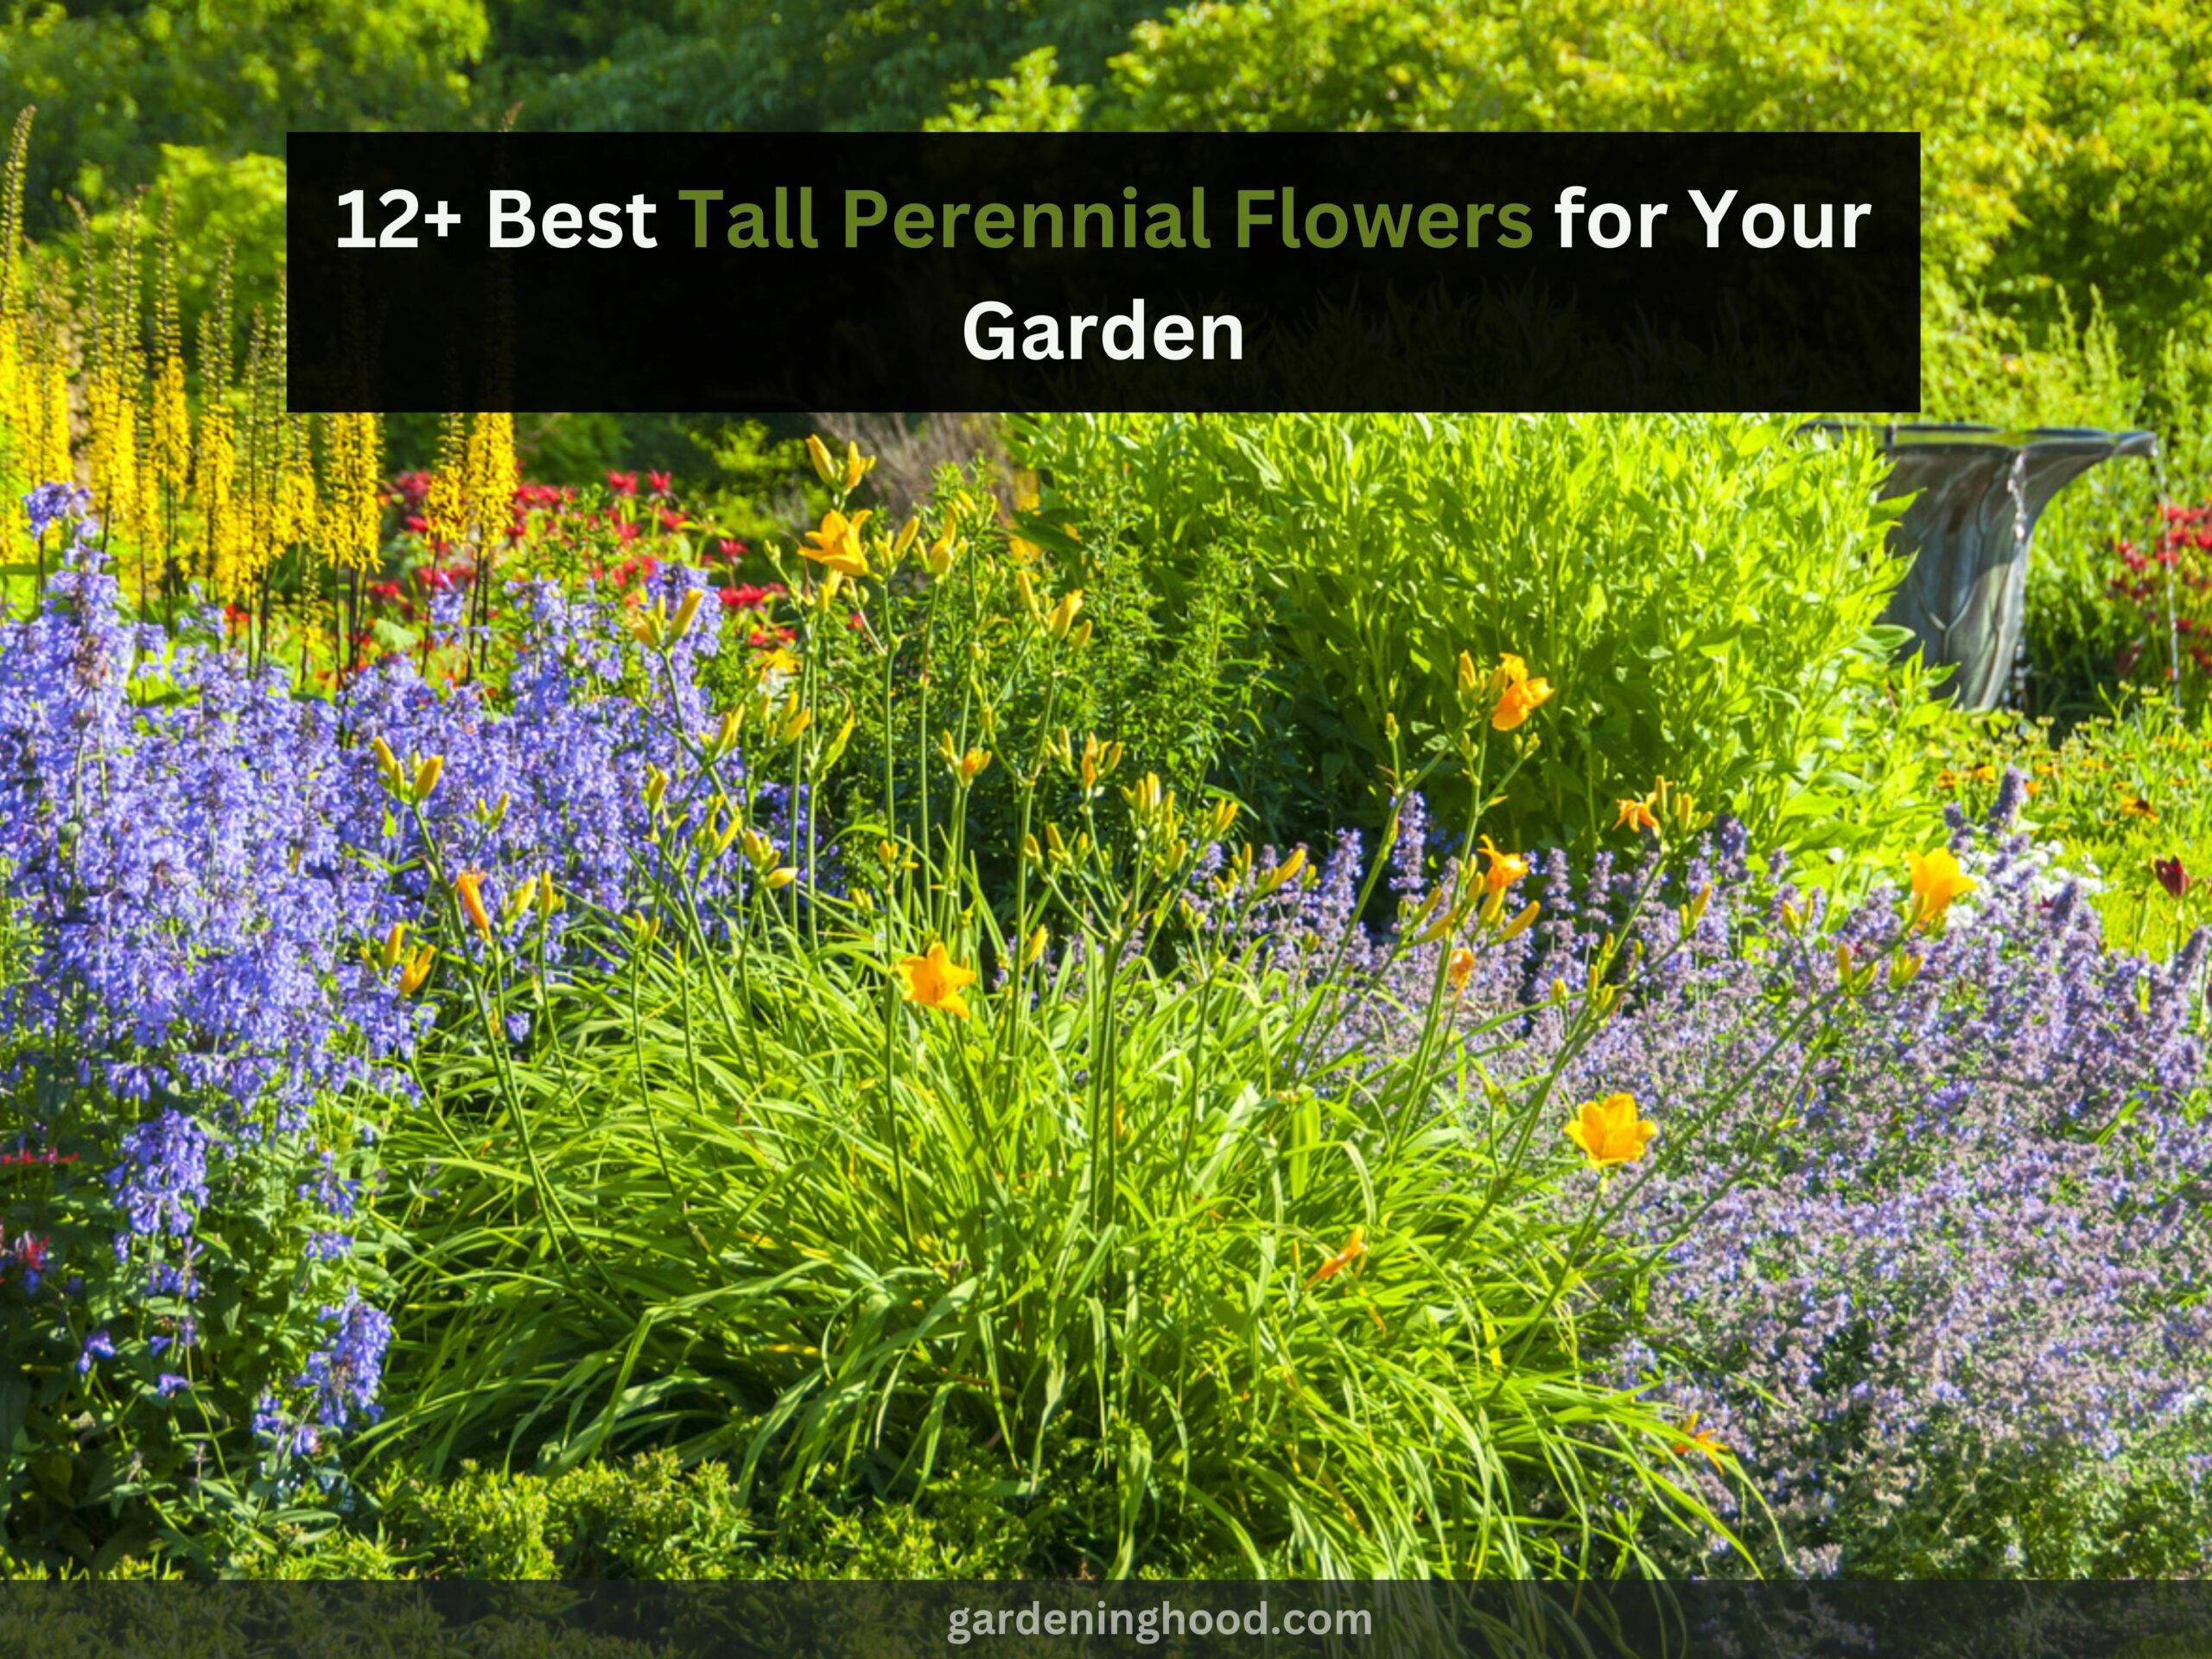 12+ Best Tall Perennial Flowers for Your Garden